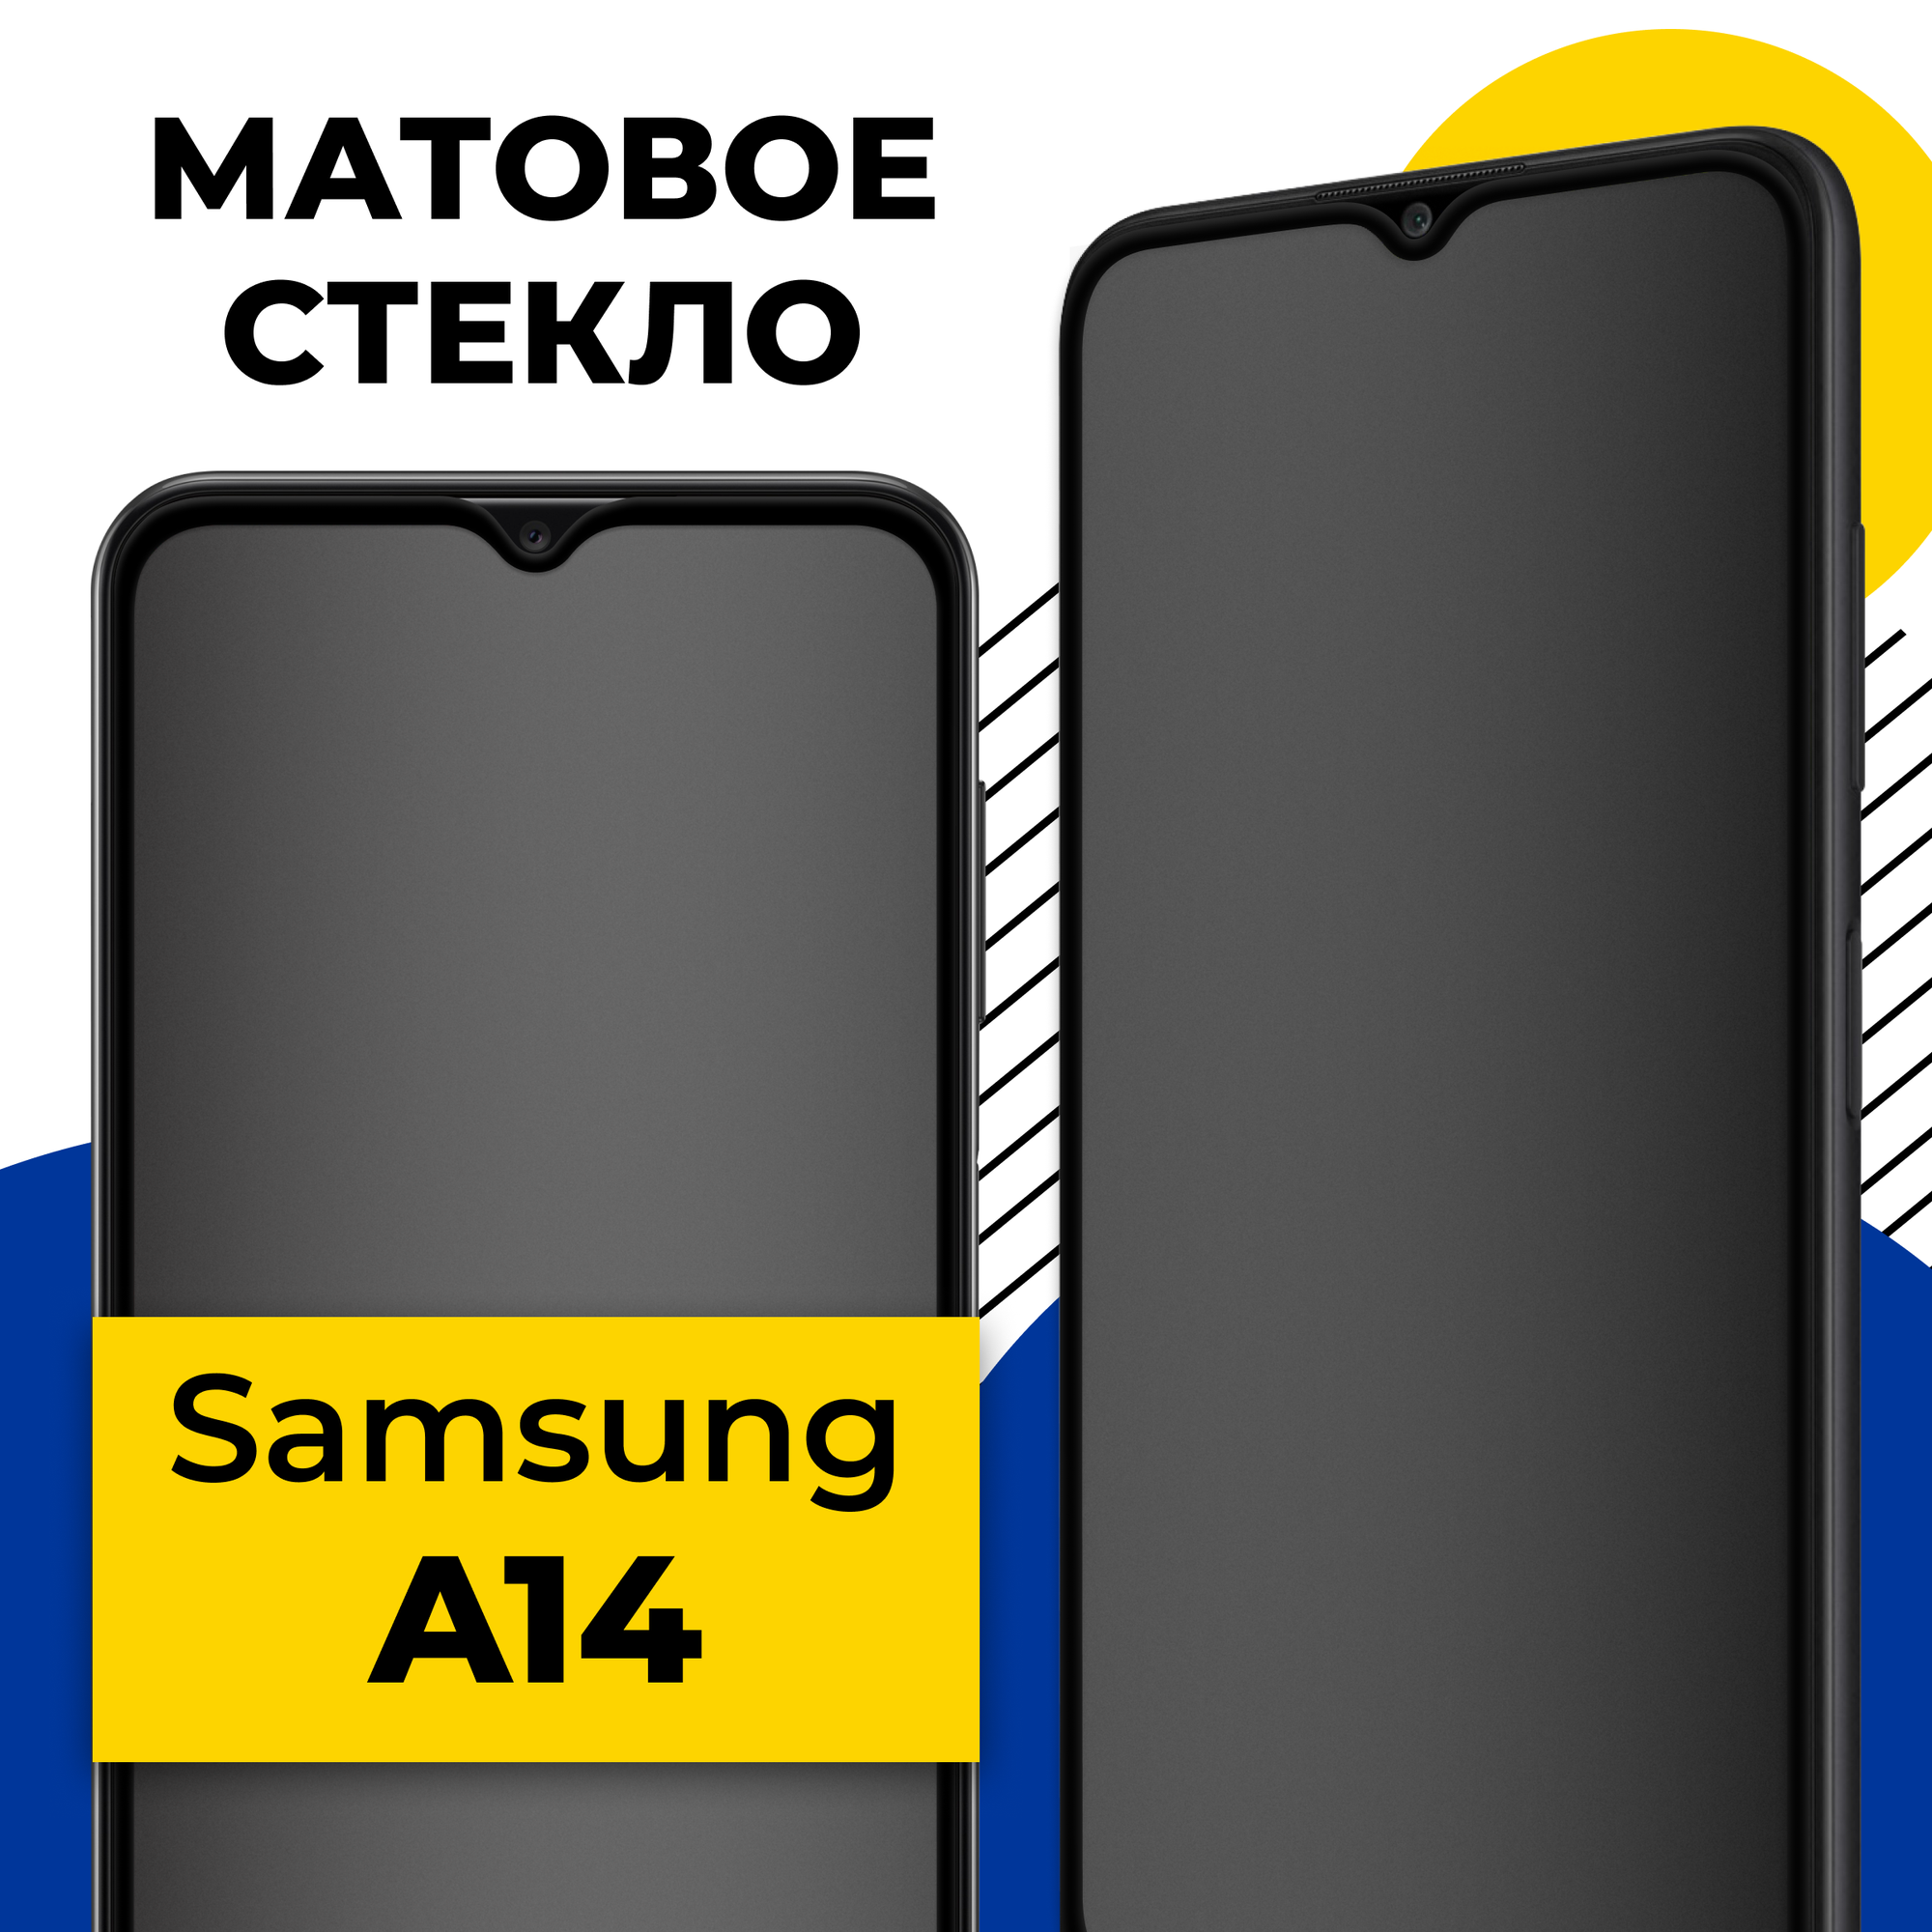 Матовое защитное стекло на телефон Samsung Galaxy A14 / Противоударное стекло на смартфон Самсунг Галакси А14 с олеофобным покрытием